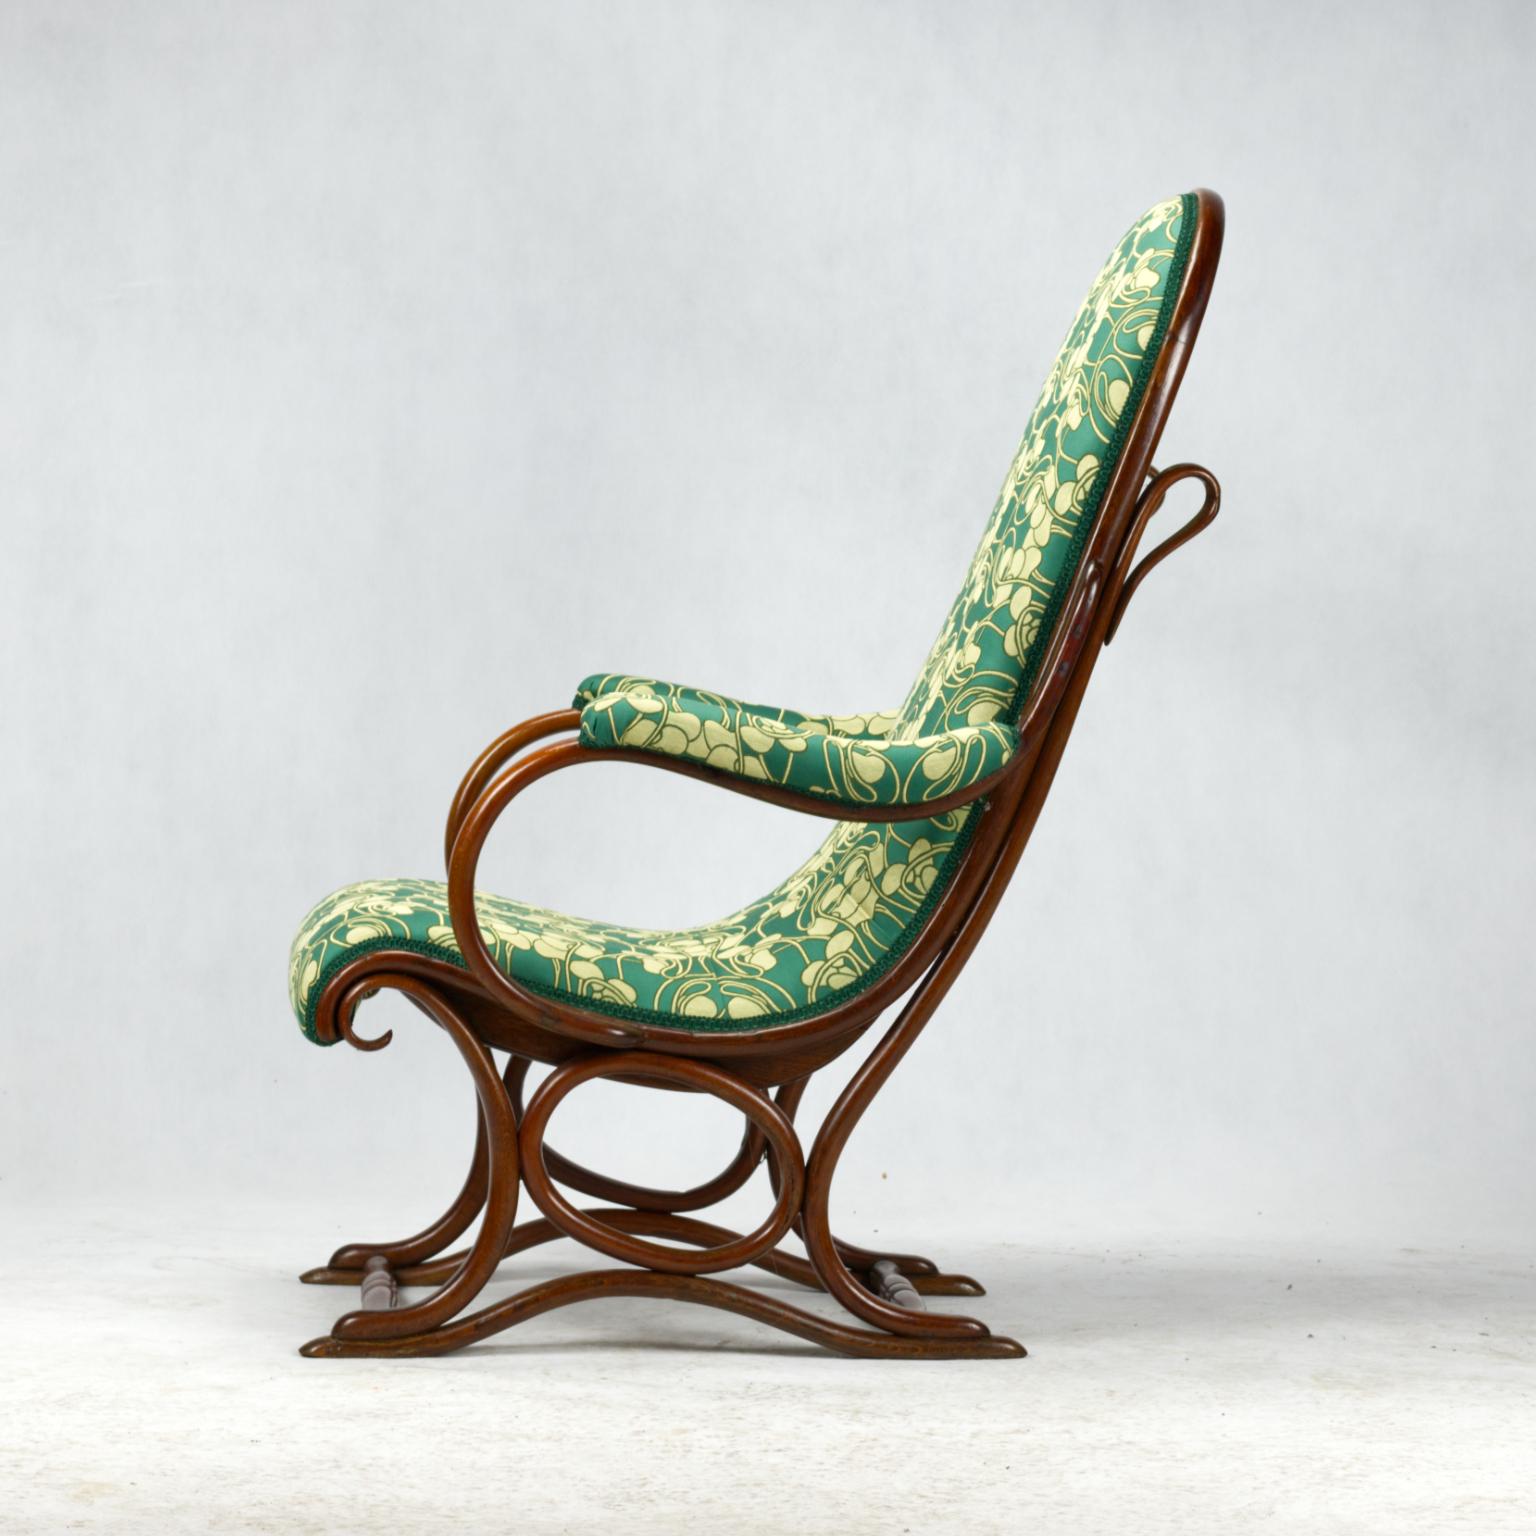 Austrian Art Nouveau Bentwood Salonfauteuil Easy Chair / Armchair Thonet No. 1 circa 1890 For Sale